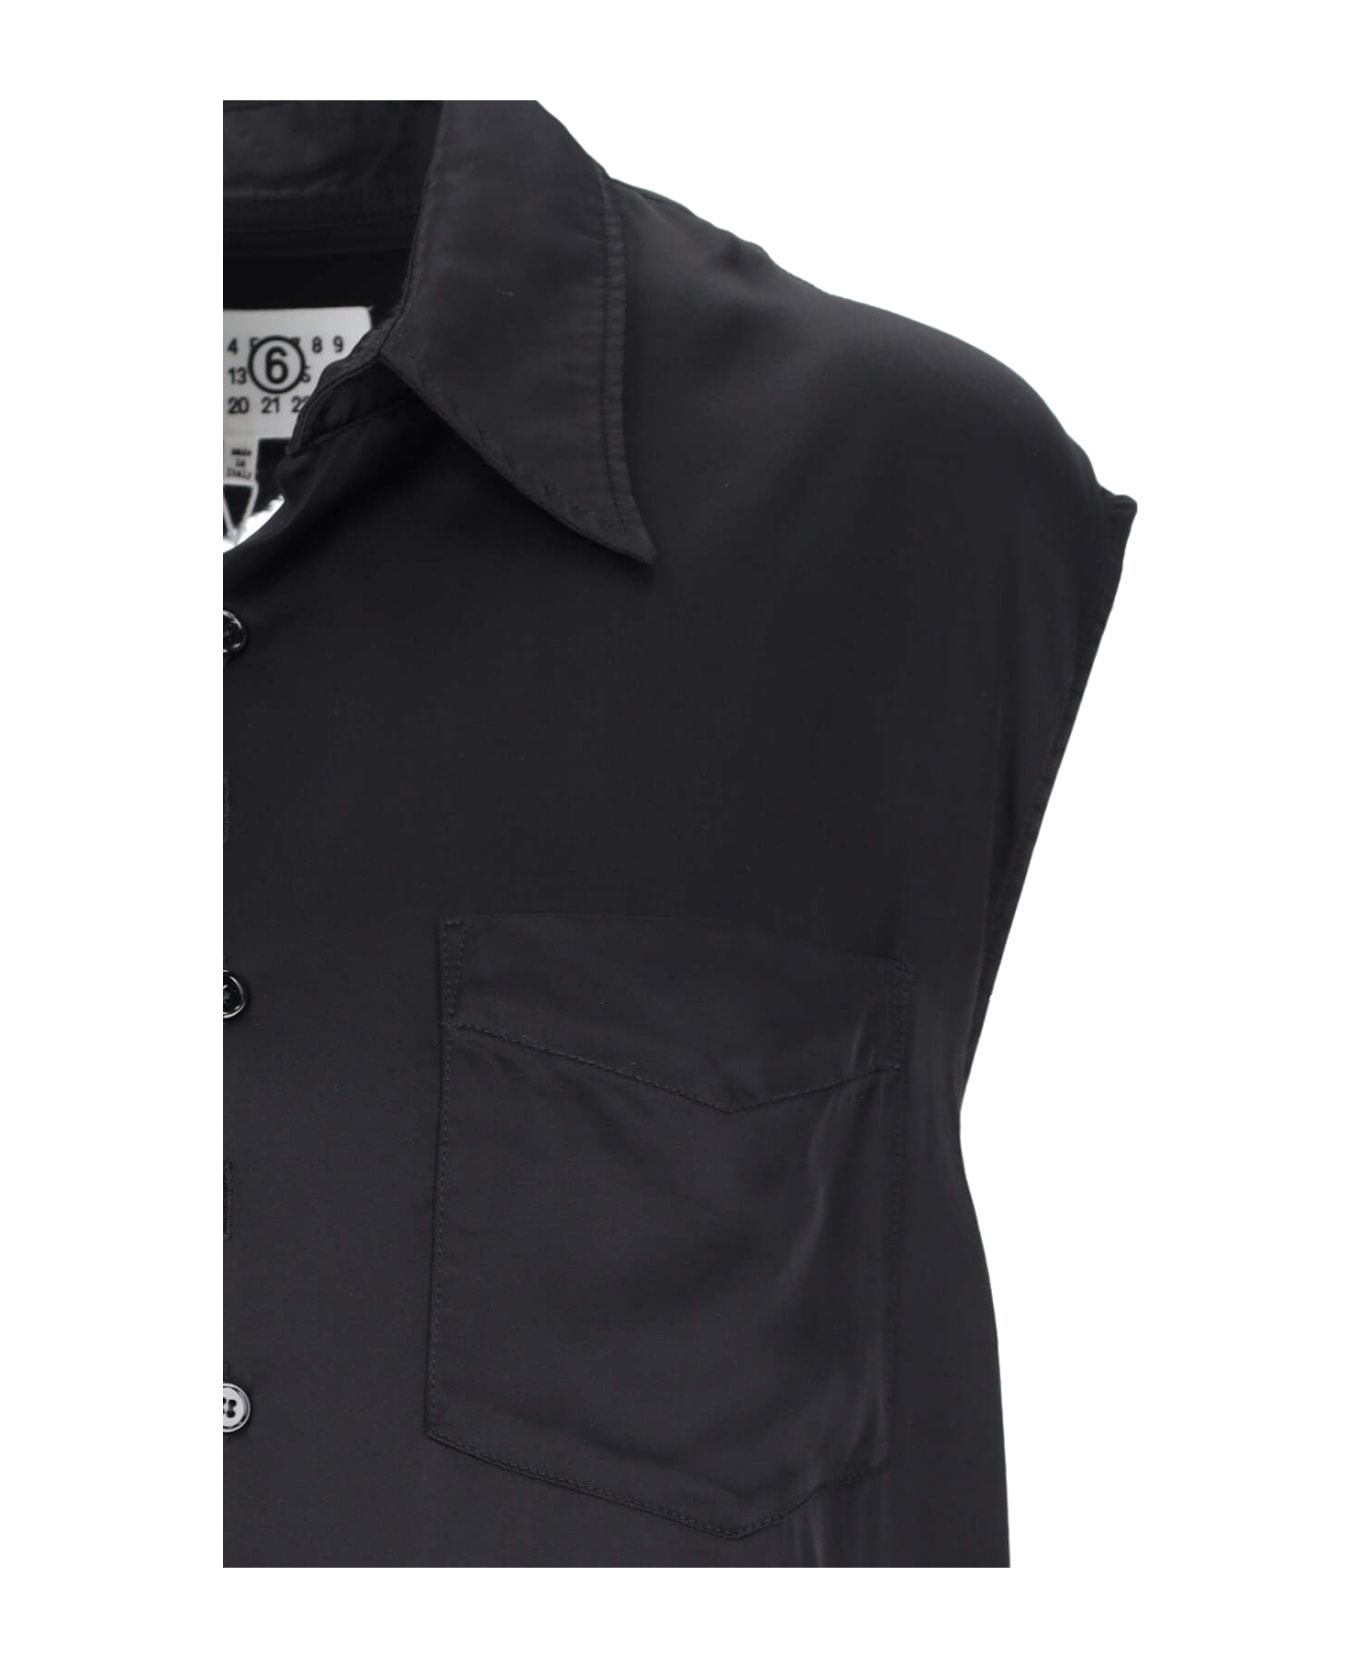 MM6 Maison Margiela Viscose Sleeveless Shirt - Black